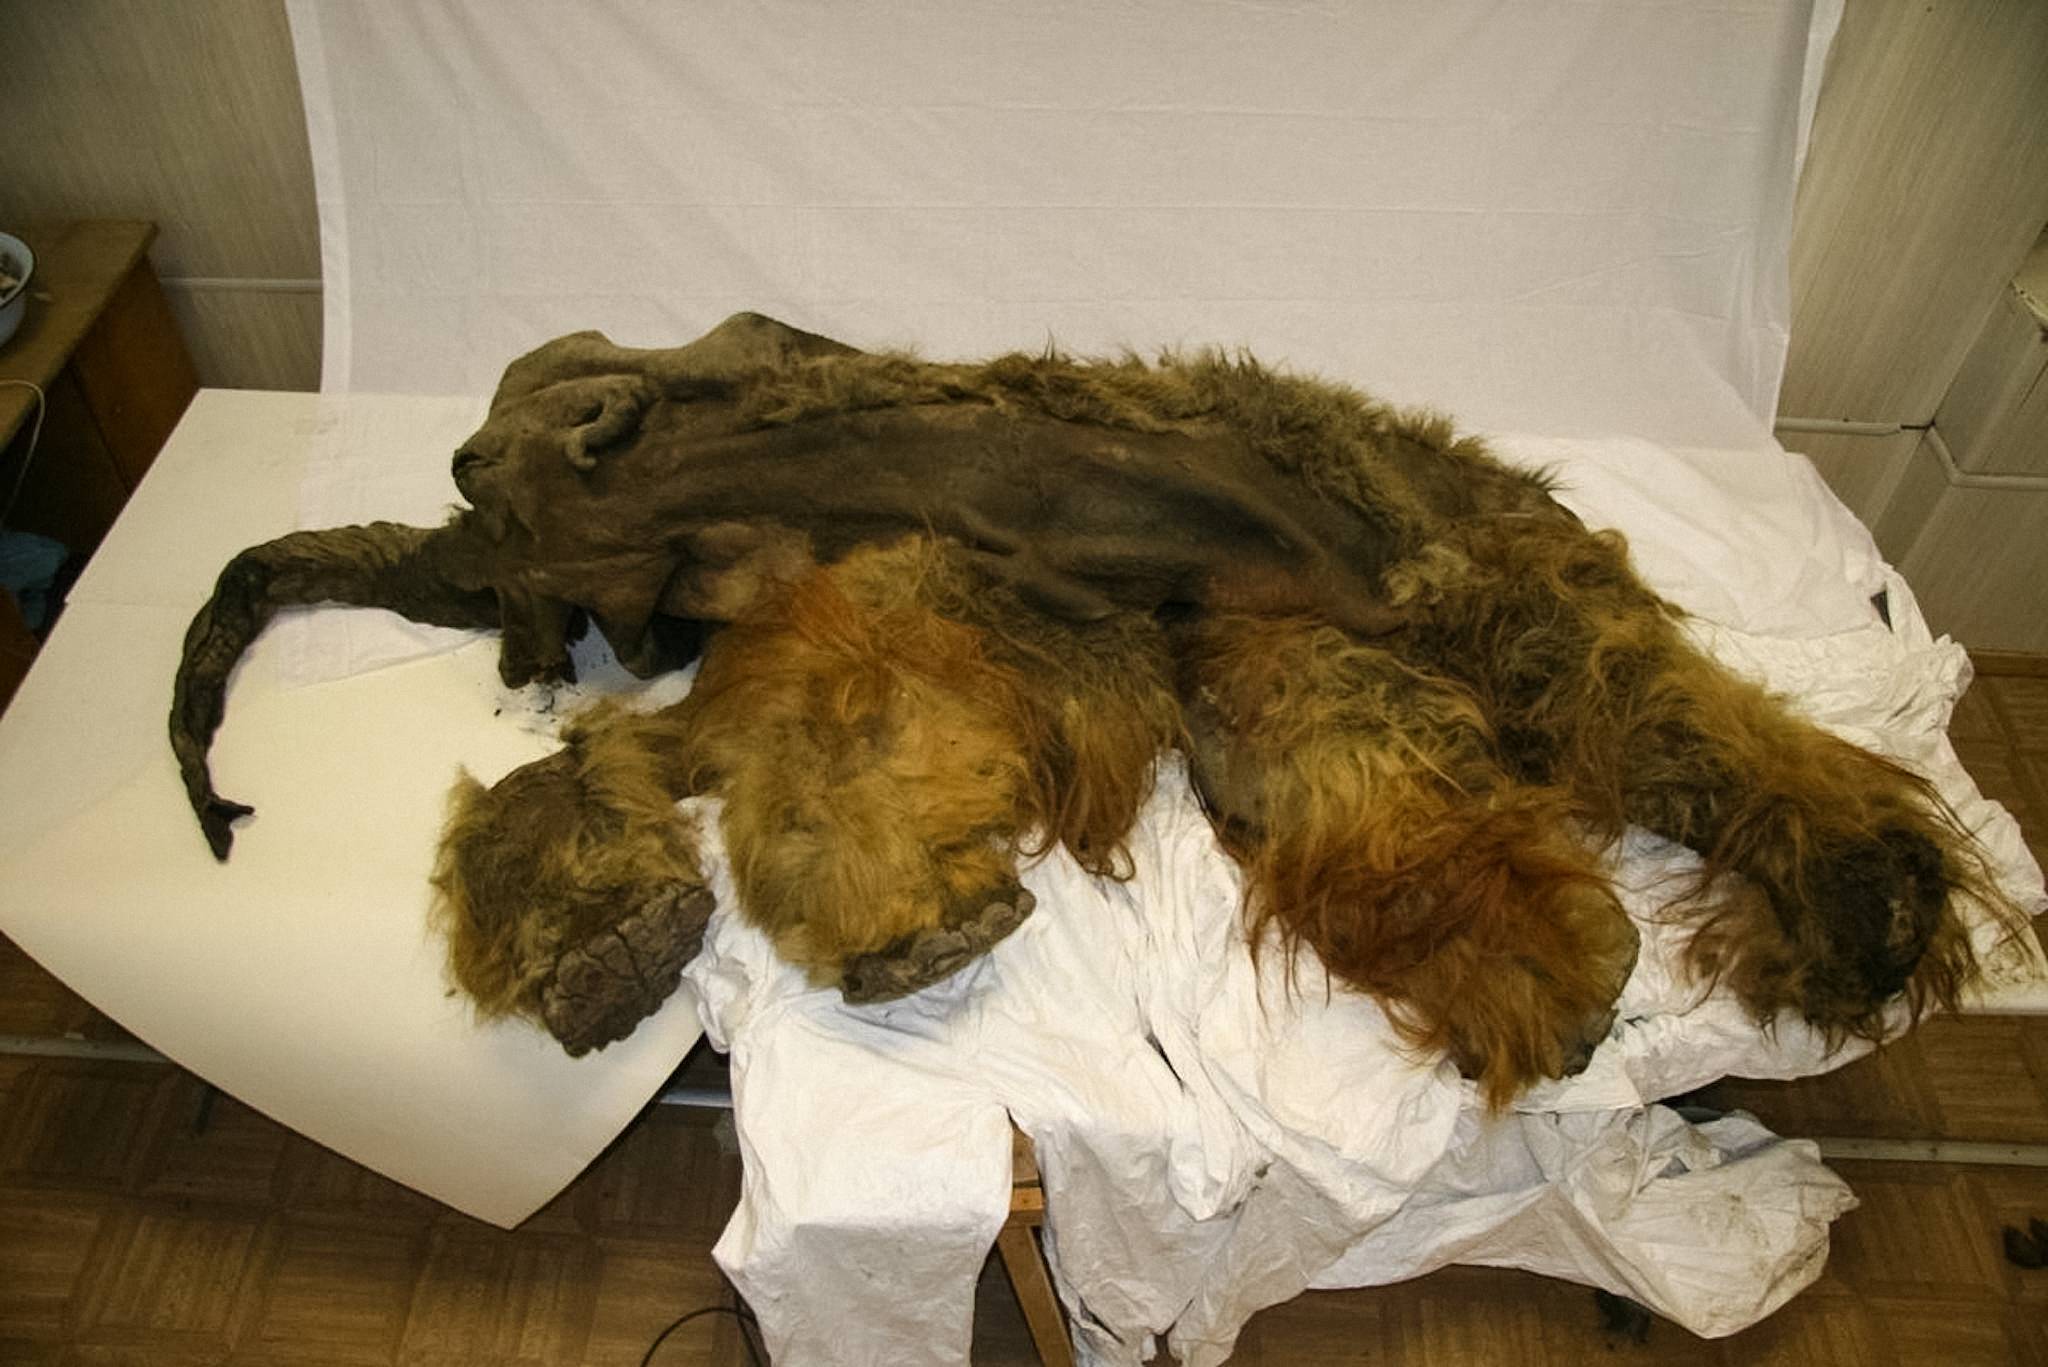 De 28,000 jaar oude gemummificeerde overblijfselen van een wolharige mammoet, die in augustus 2010 werd gevonden aan de kust van de Laptevzee nabij Yukagir, Rusland. De mammoet, genaamd Yuka, was 6 tot 9 jaar oud toen ze stierf. © Afbeelding met dank aan: Anastasia Kharlamova